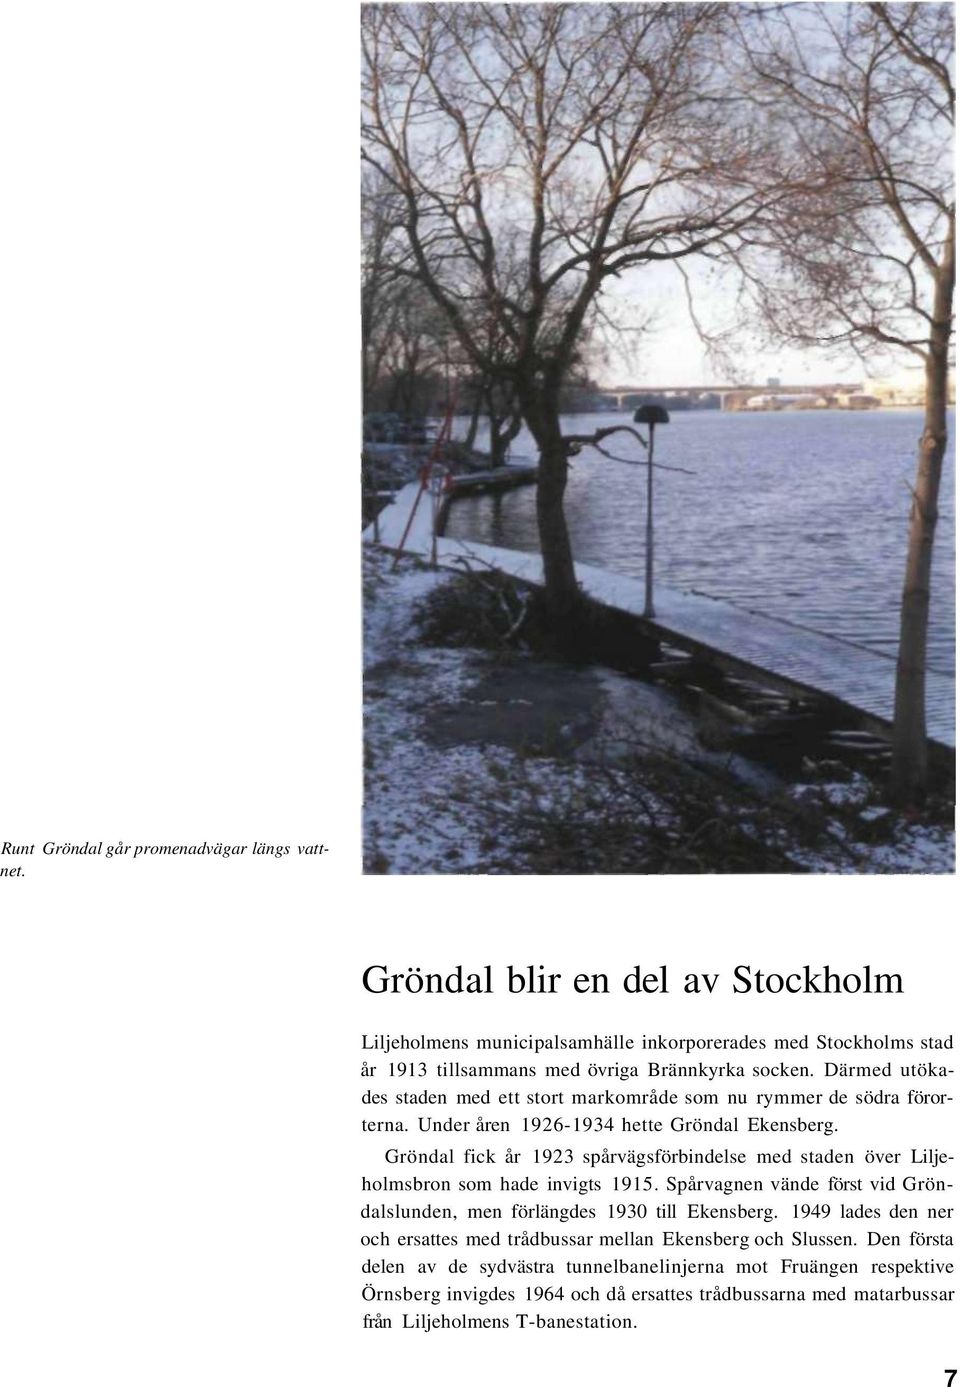 Därmed utökades staden med ett stort markområde som nu rymmer de södra förorterna. Under åren 1926-1934 hette Gröndal Ekensberg.